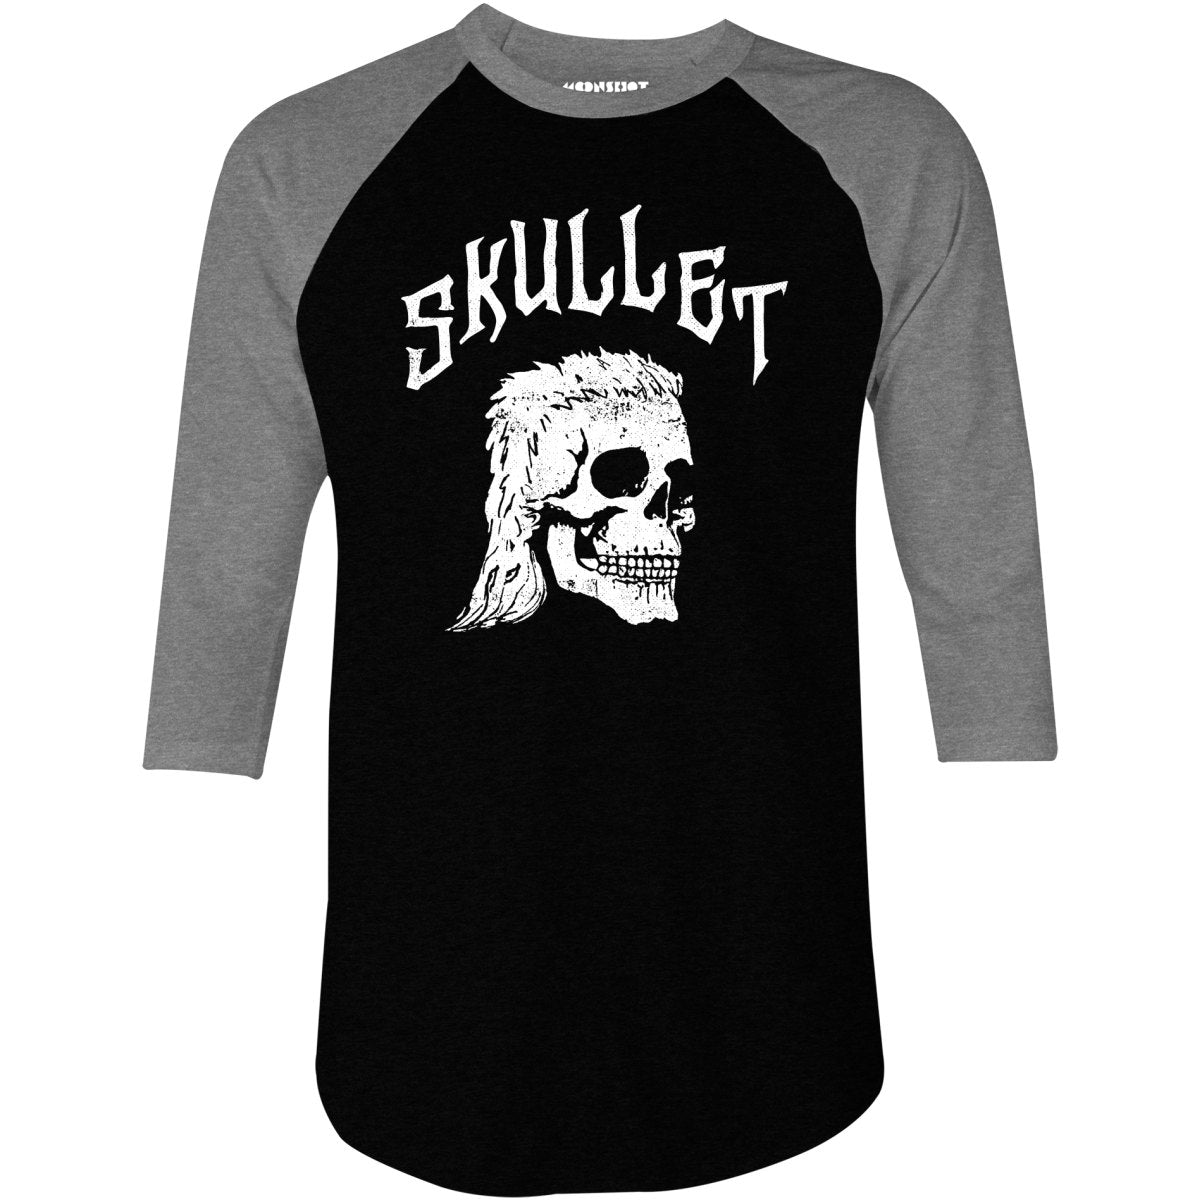 Skullet - 3/4 Sleeve Raglan T-Shirt